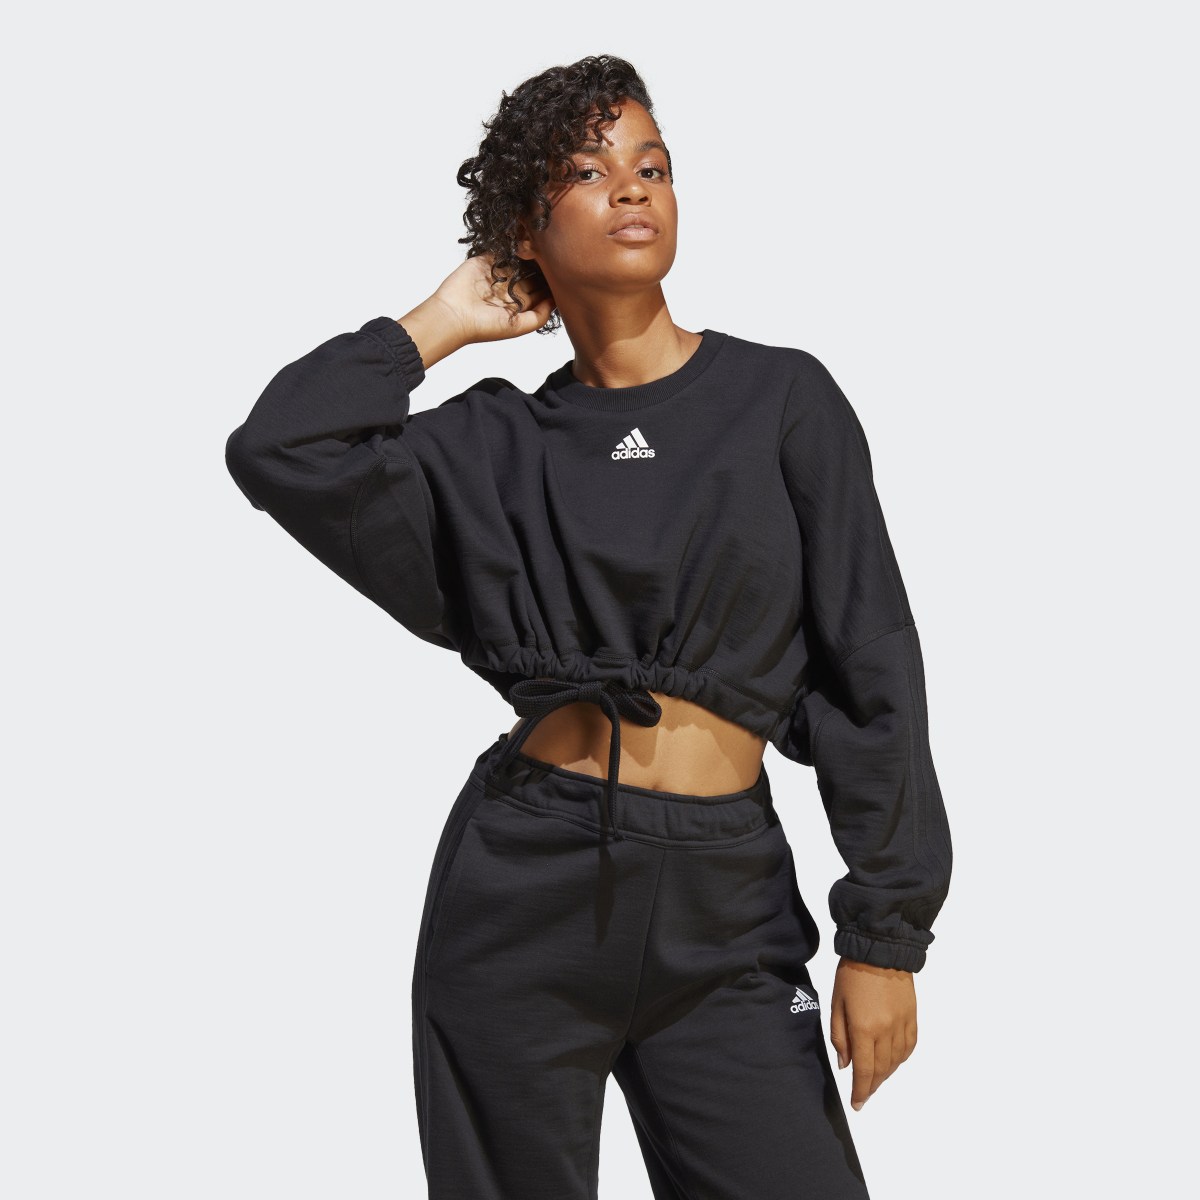 Adidas Dance Crop Versatile Sweatshirt. 5